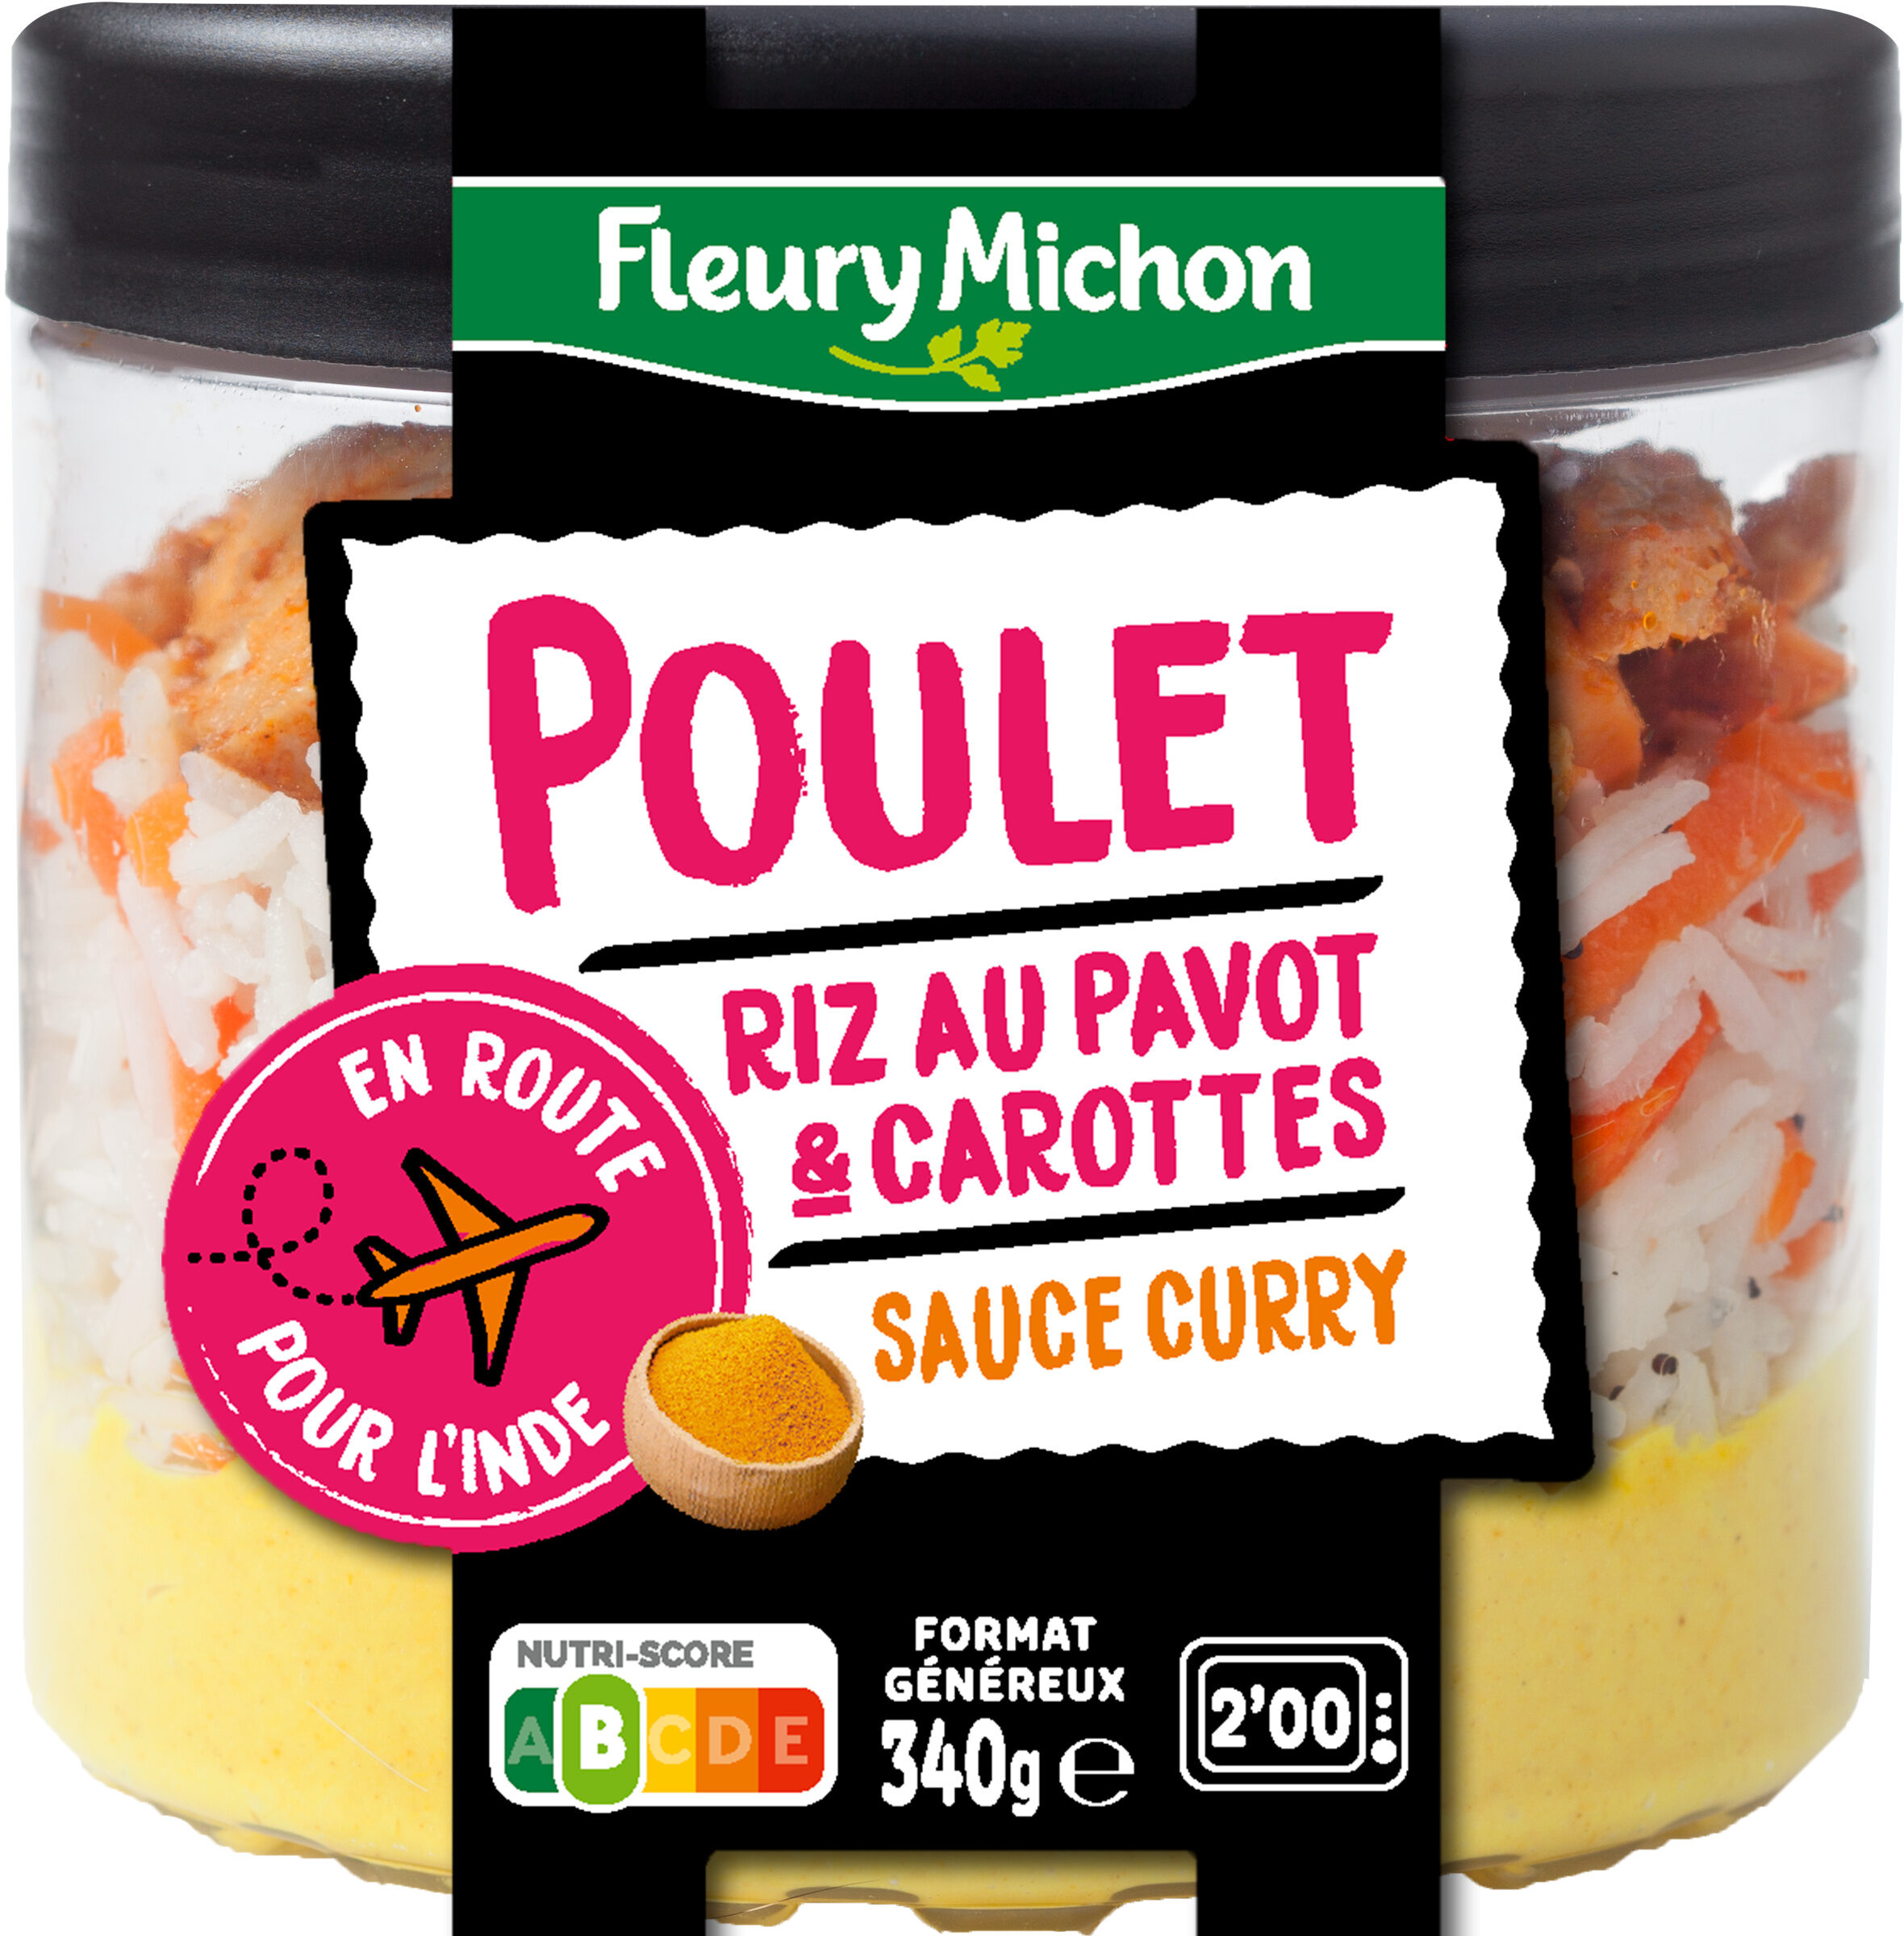 Poulet riz au pavot & carottes sauce curry - Produit